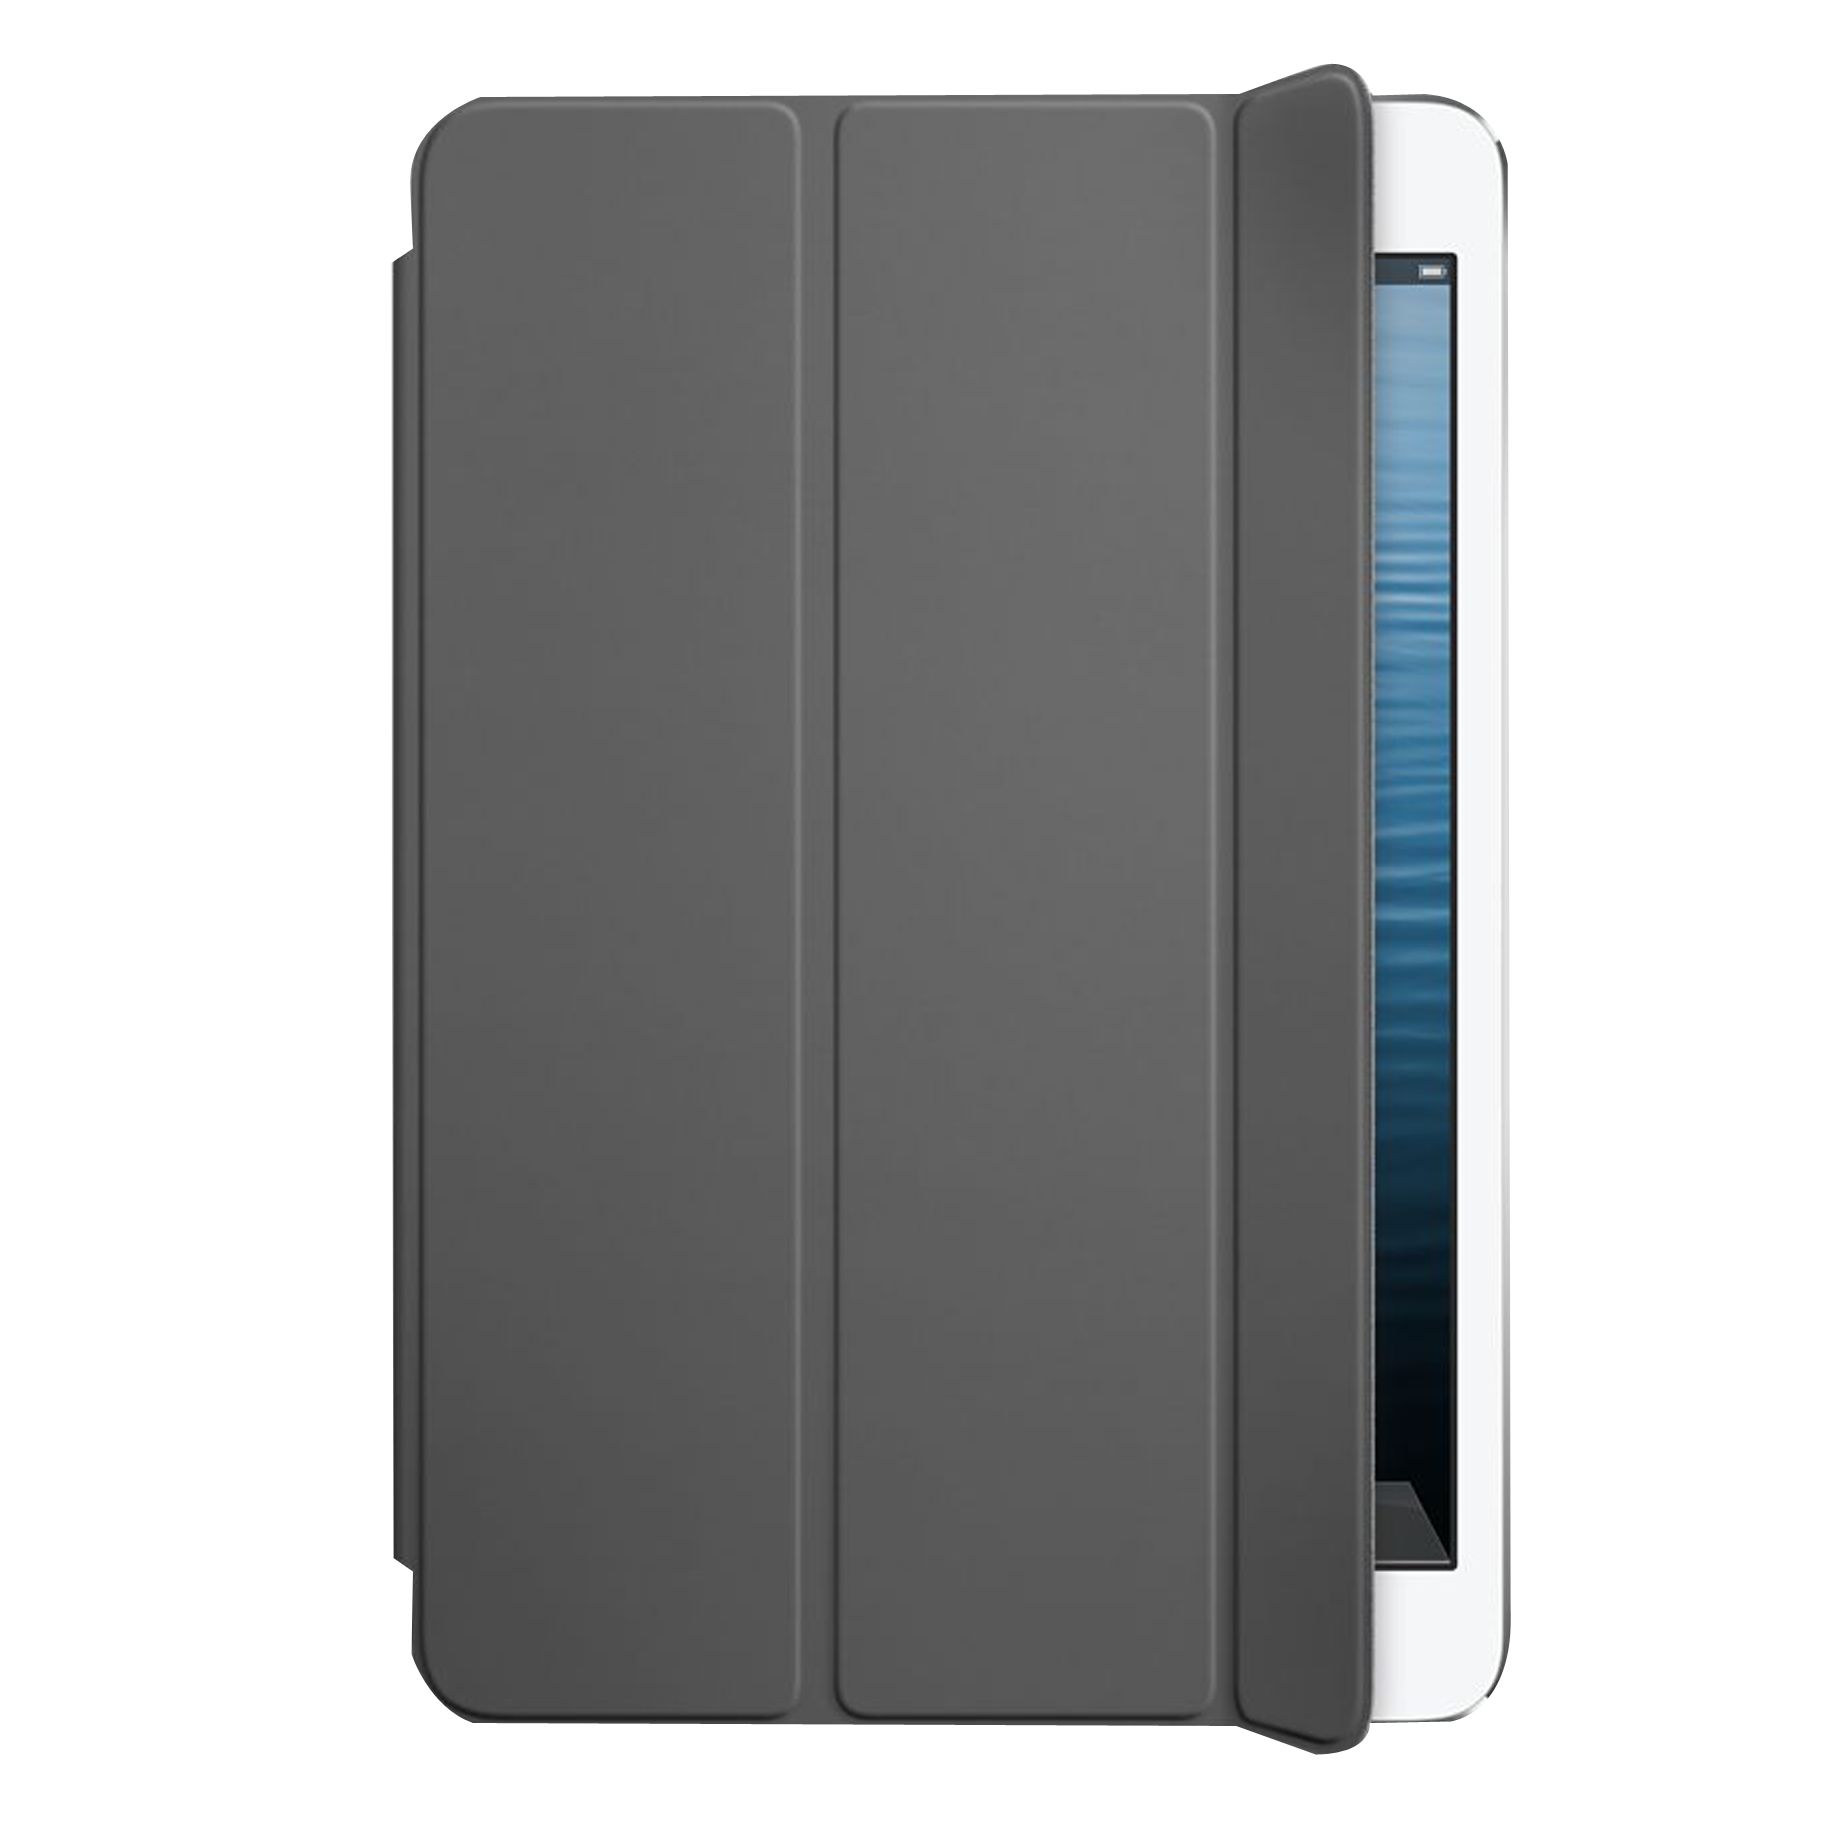 Apple Smart Cover for iPad mini 1, 2 & 3